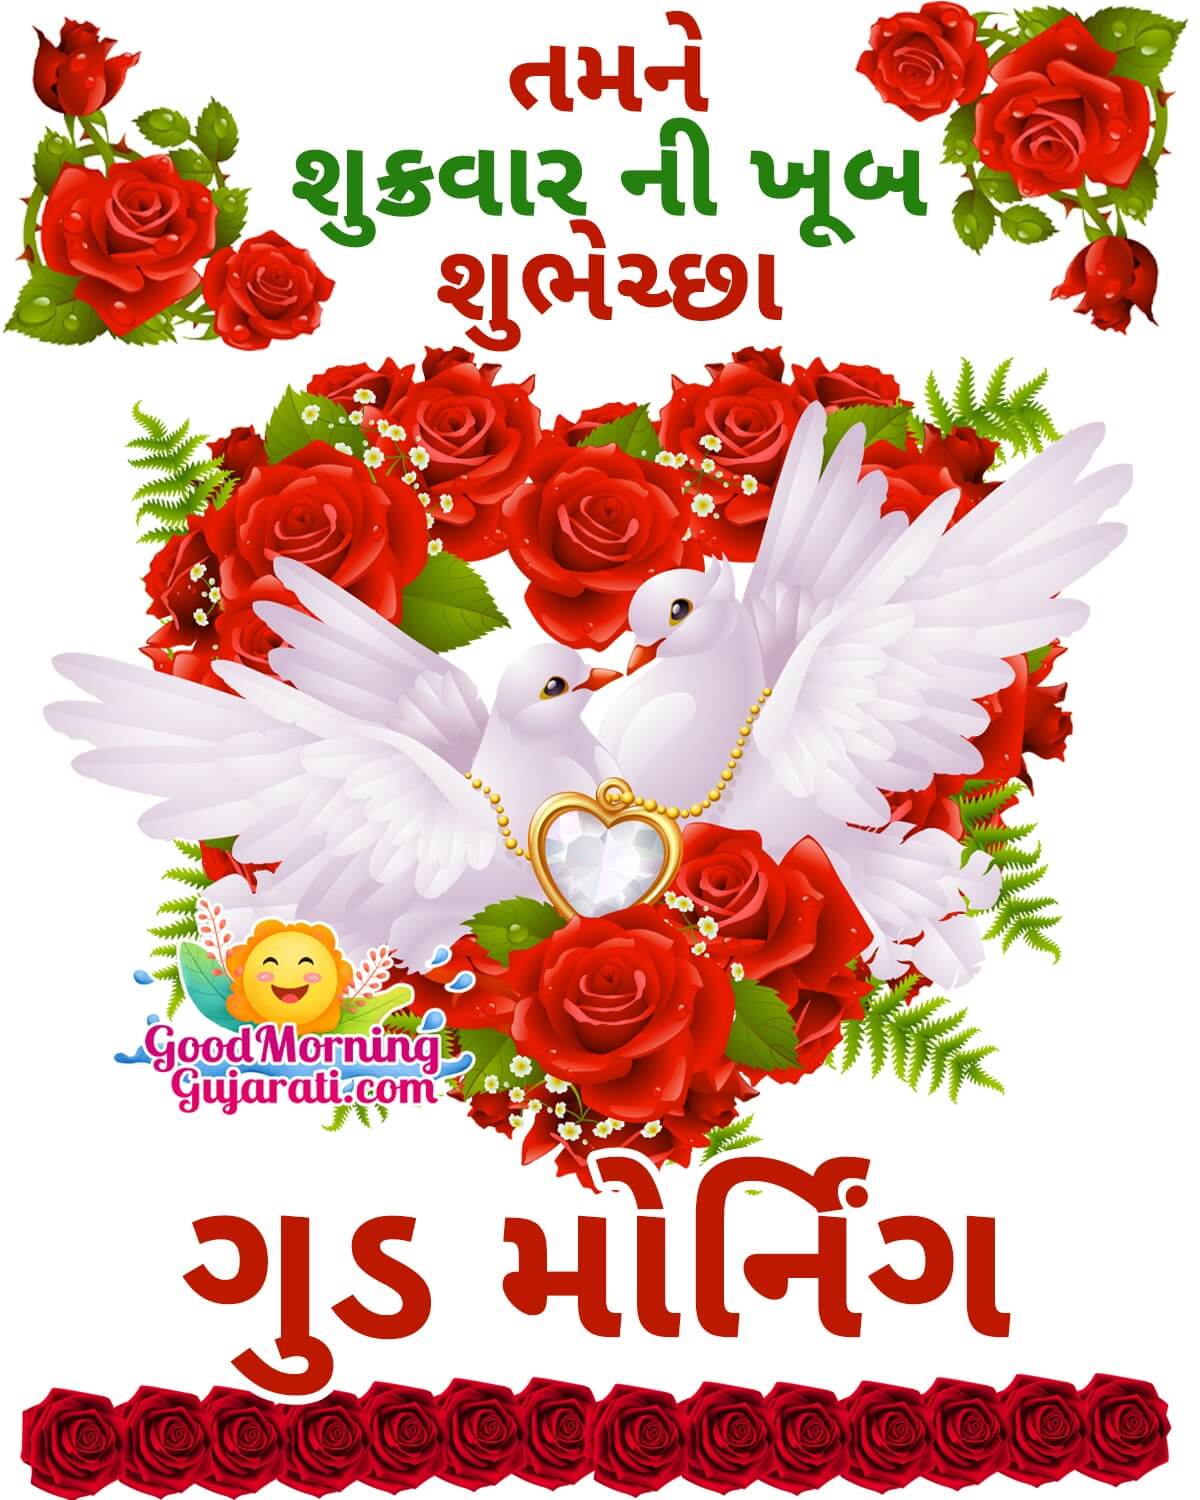 Good Morning Happy Shukrwar Wish